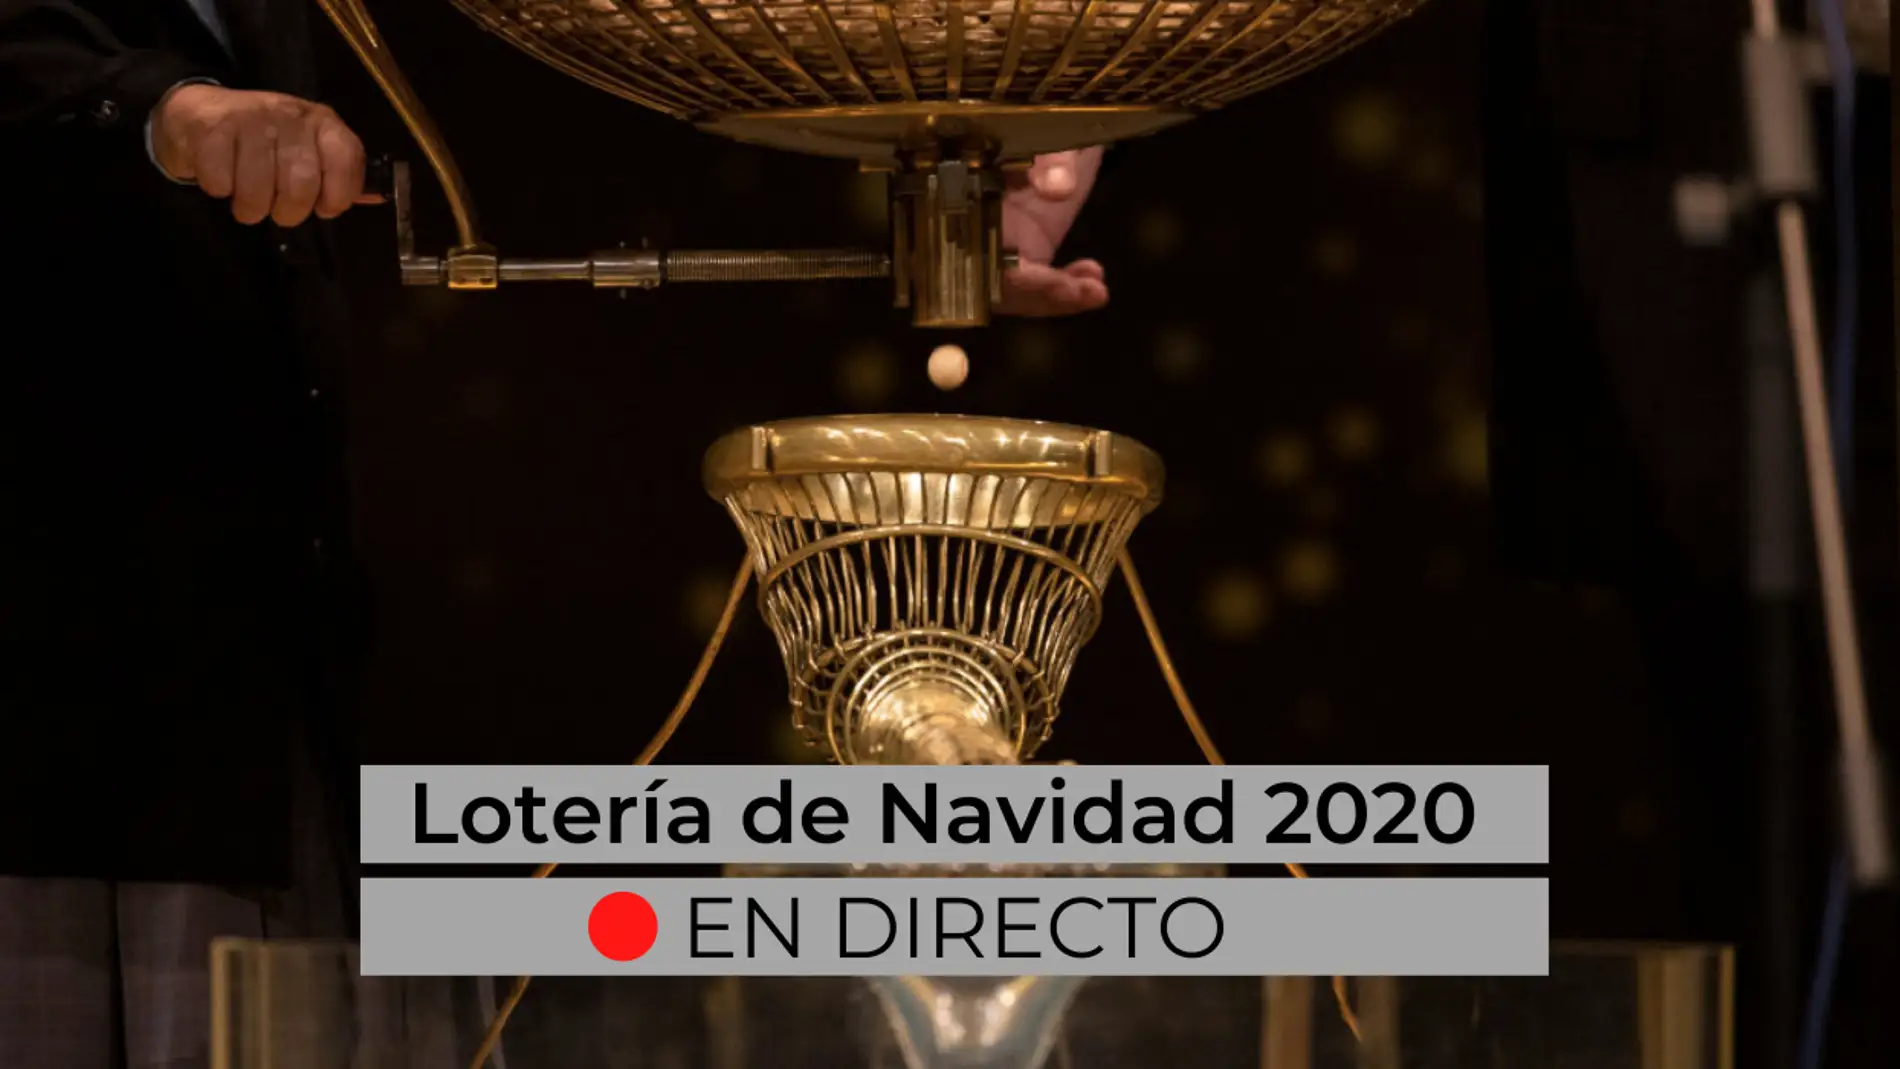 Lotería Navidad 2020: comprobar premios, resultados, décimos premiados con El Gordo, segundo y tercer premio y la últimas noticias del sorteo, en directo